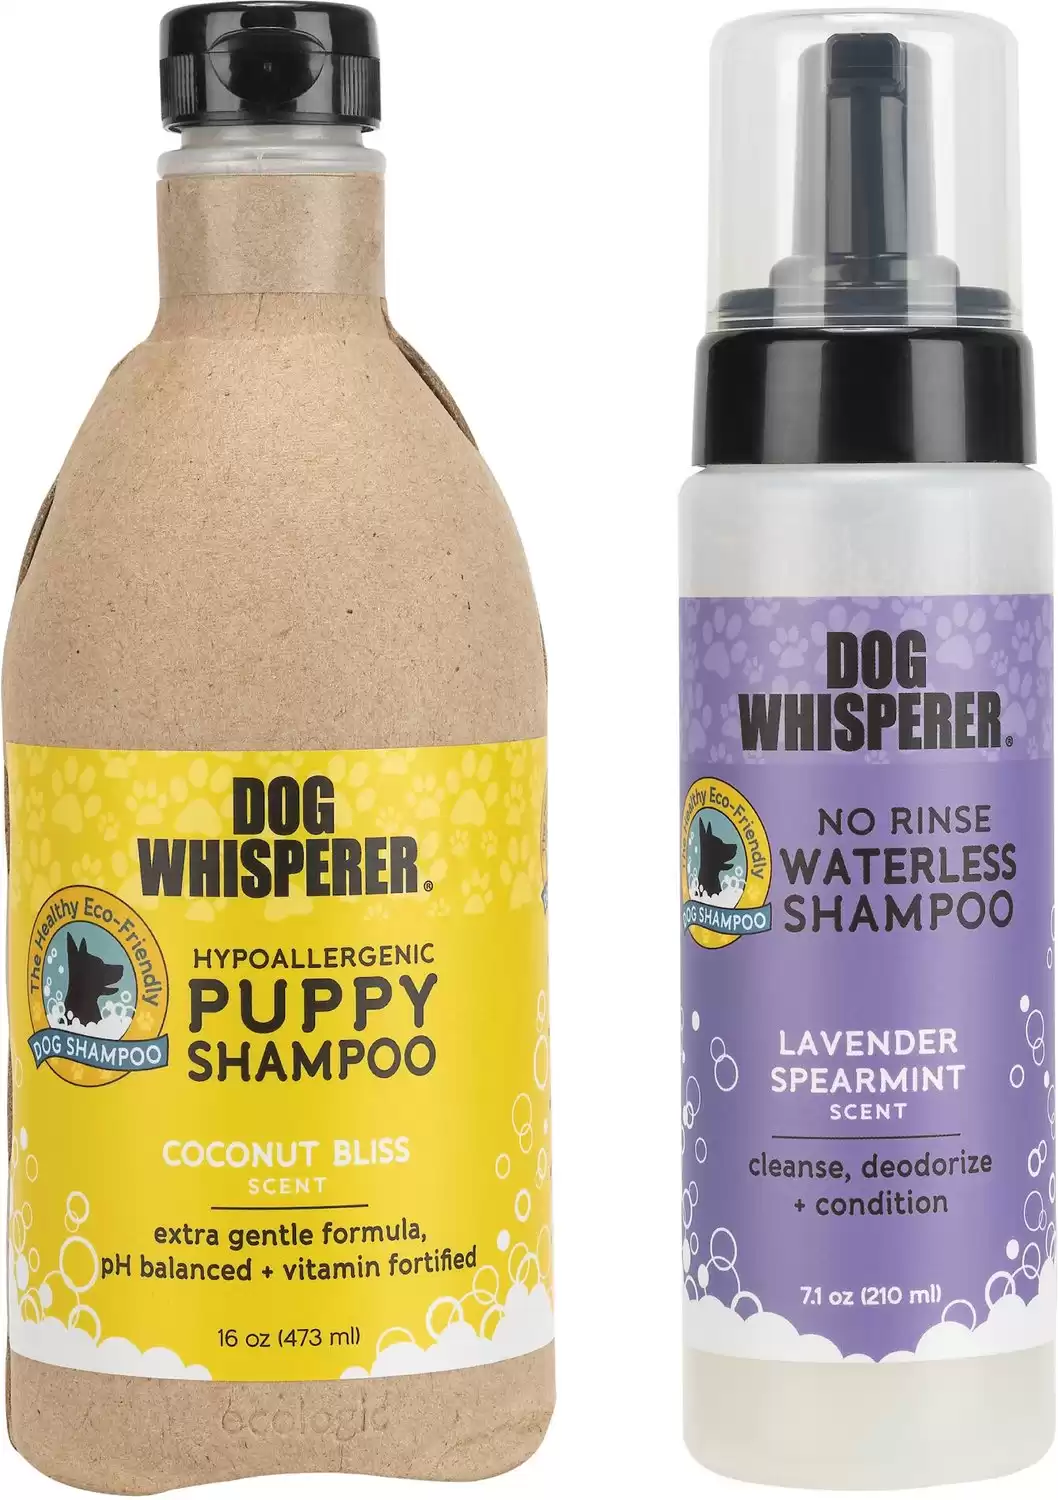 Dog Whisperer Hypoallergenic Puppy Shampoo